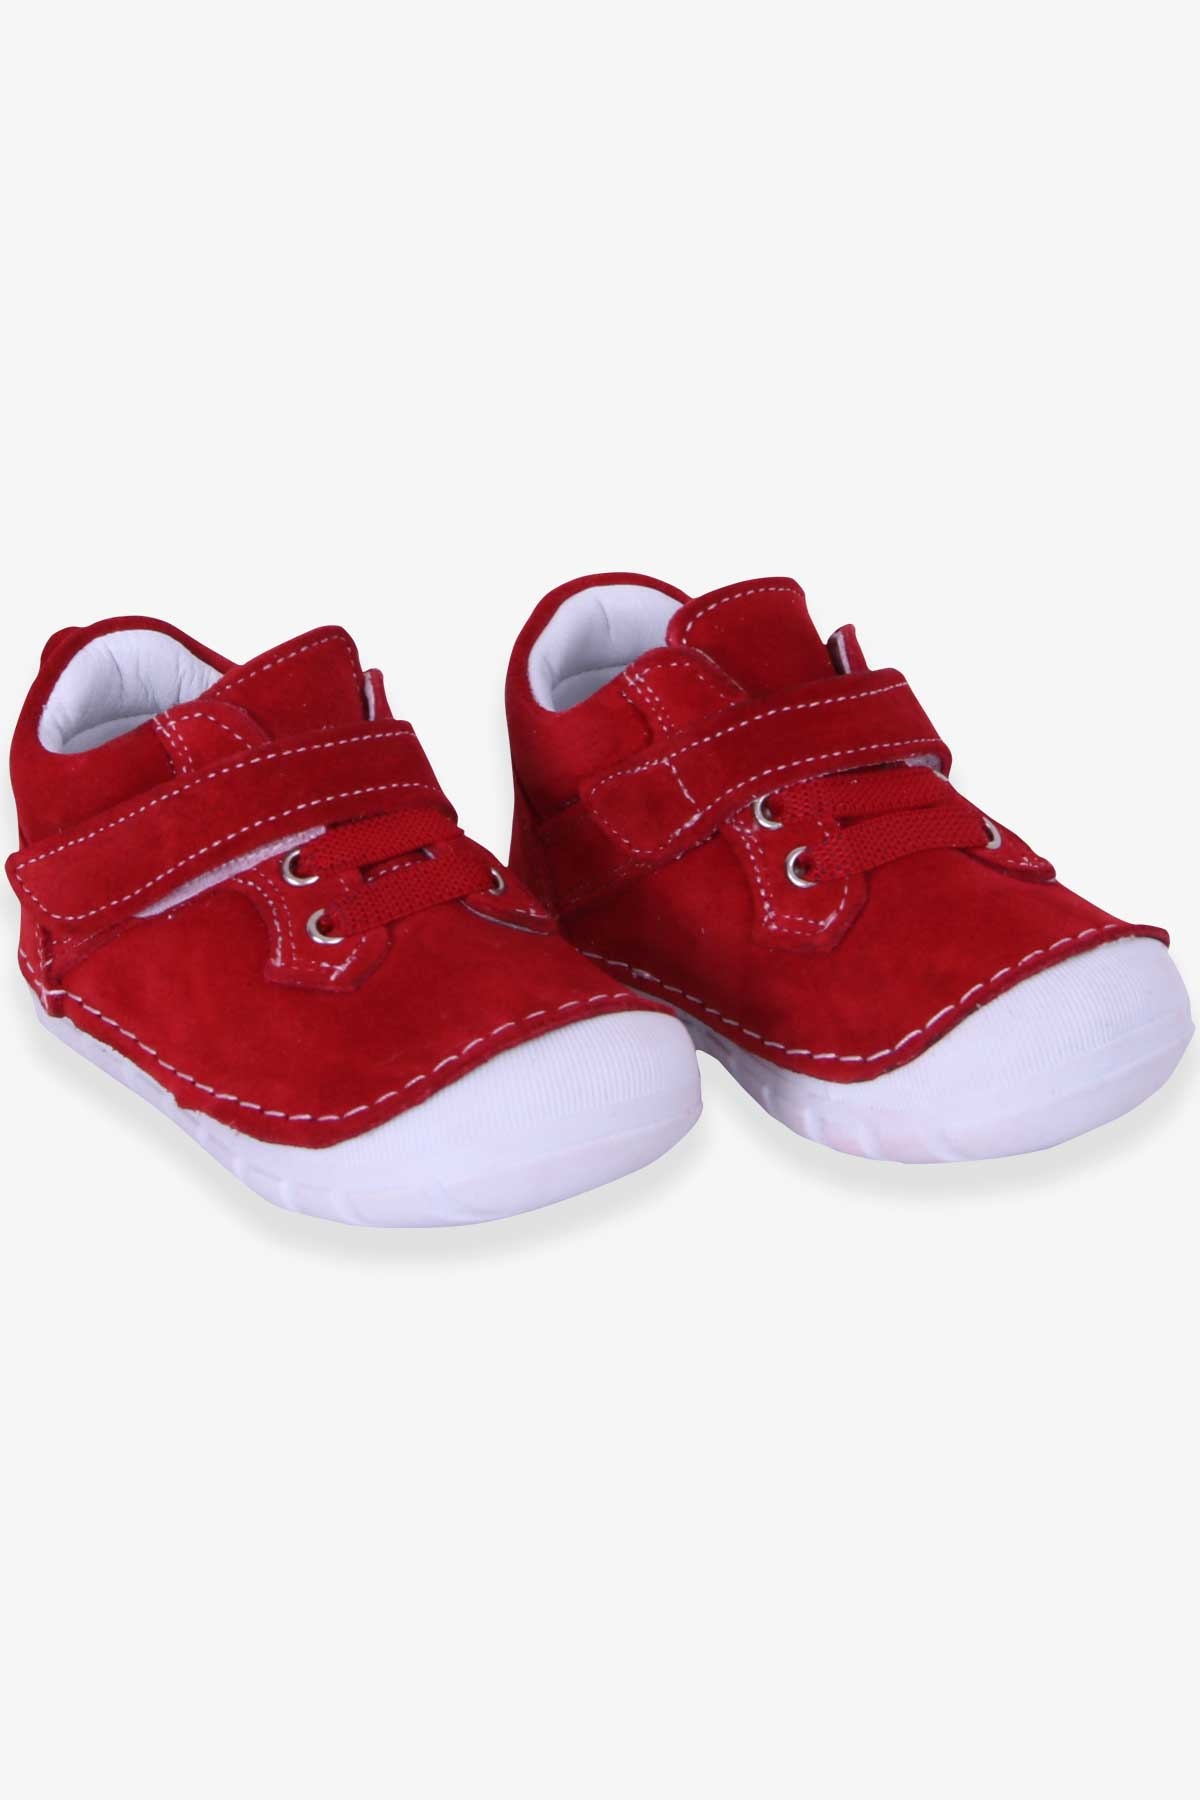 Kız Çocuk Cırtlı Süet Ayakkabı Kırmızı 19 Numara-22 Numara - Tatlı Modeller  | Breeze